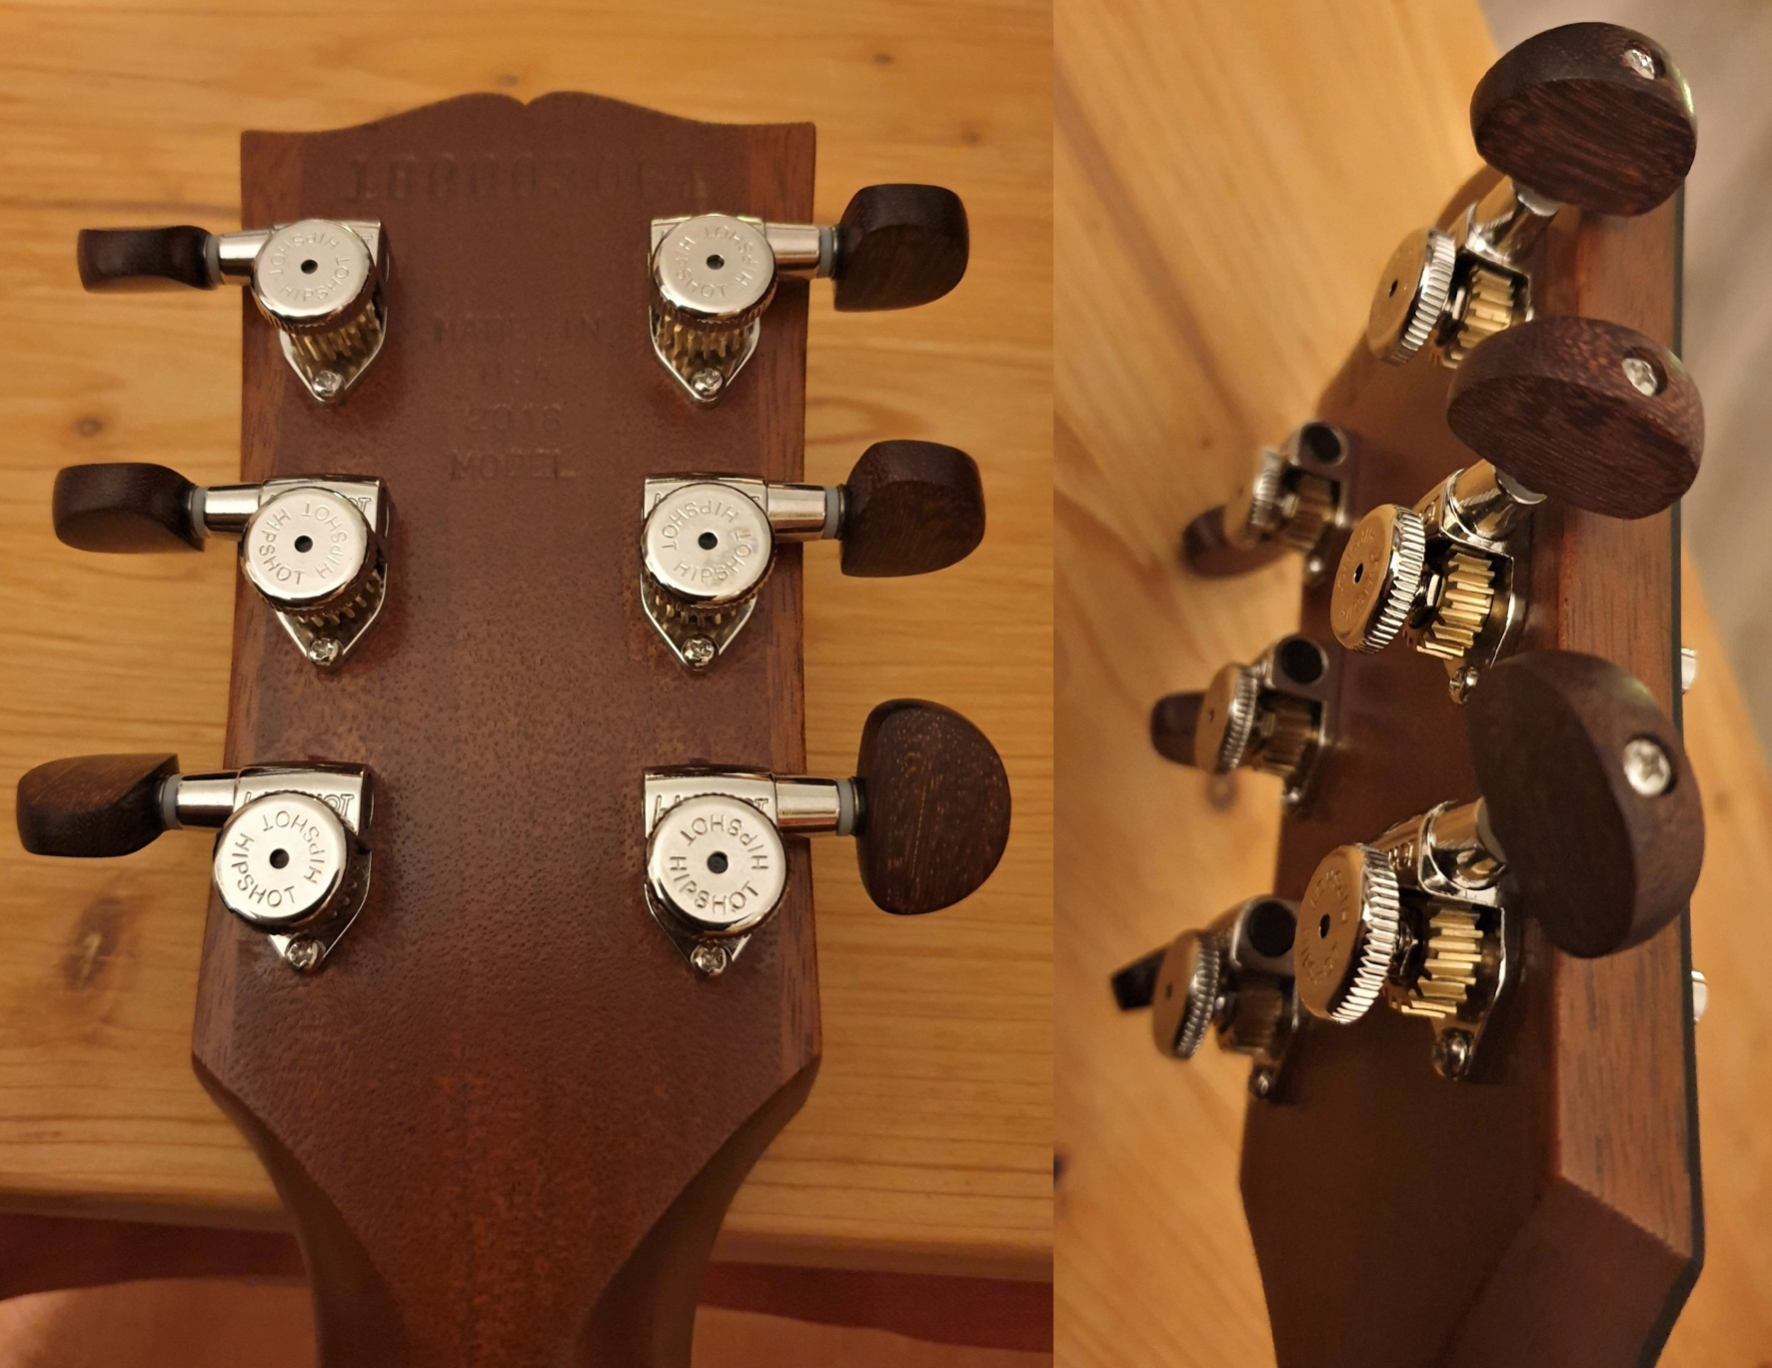 Gibson SG USA mit Hipshot Griplock Locking Tuners und Guitar Monkey Big Vintage Kidney Bean Buttons